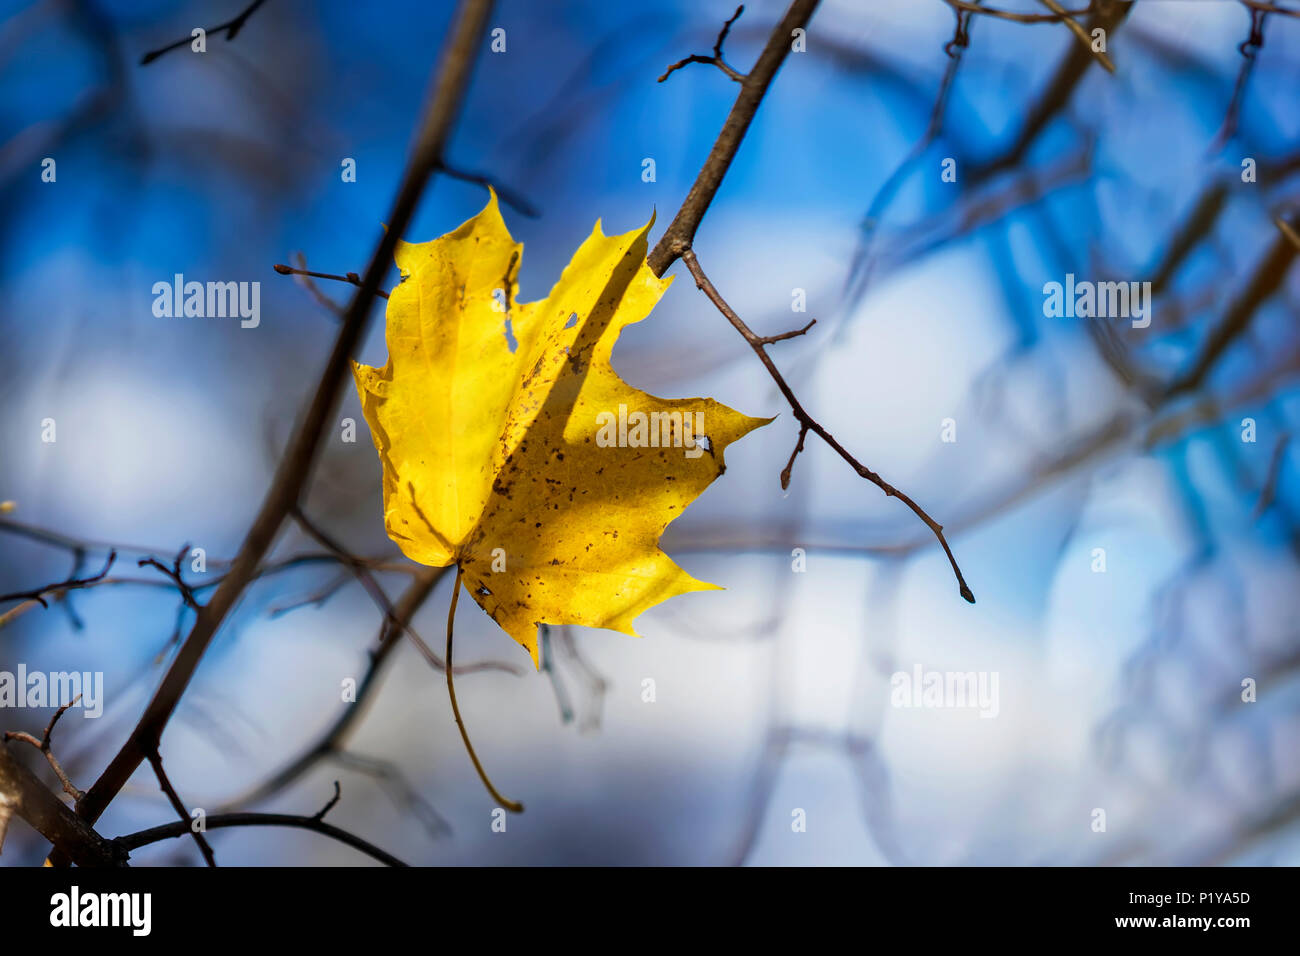 Im vergangenen Herbst maple leaf in den leeren Äste vor dem Hintergrund des kalten, blauen Himmel. Jahreszeiten, nostalgische Stimmung Konzept Stockfoto